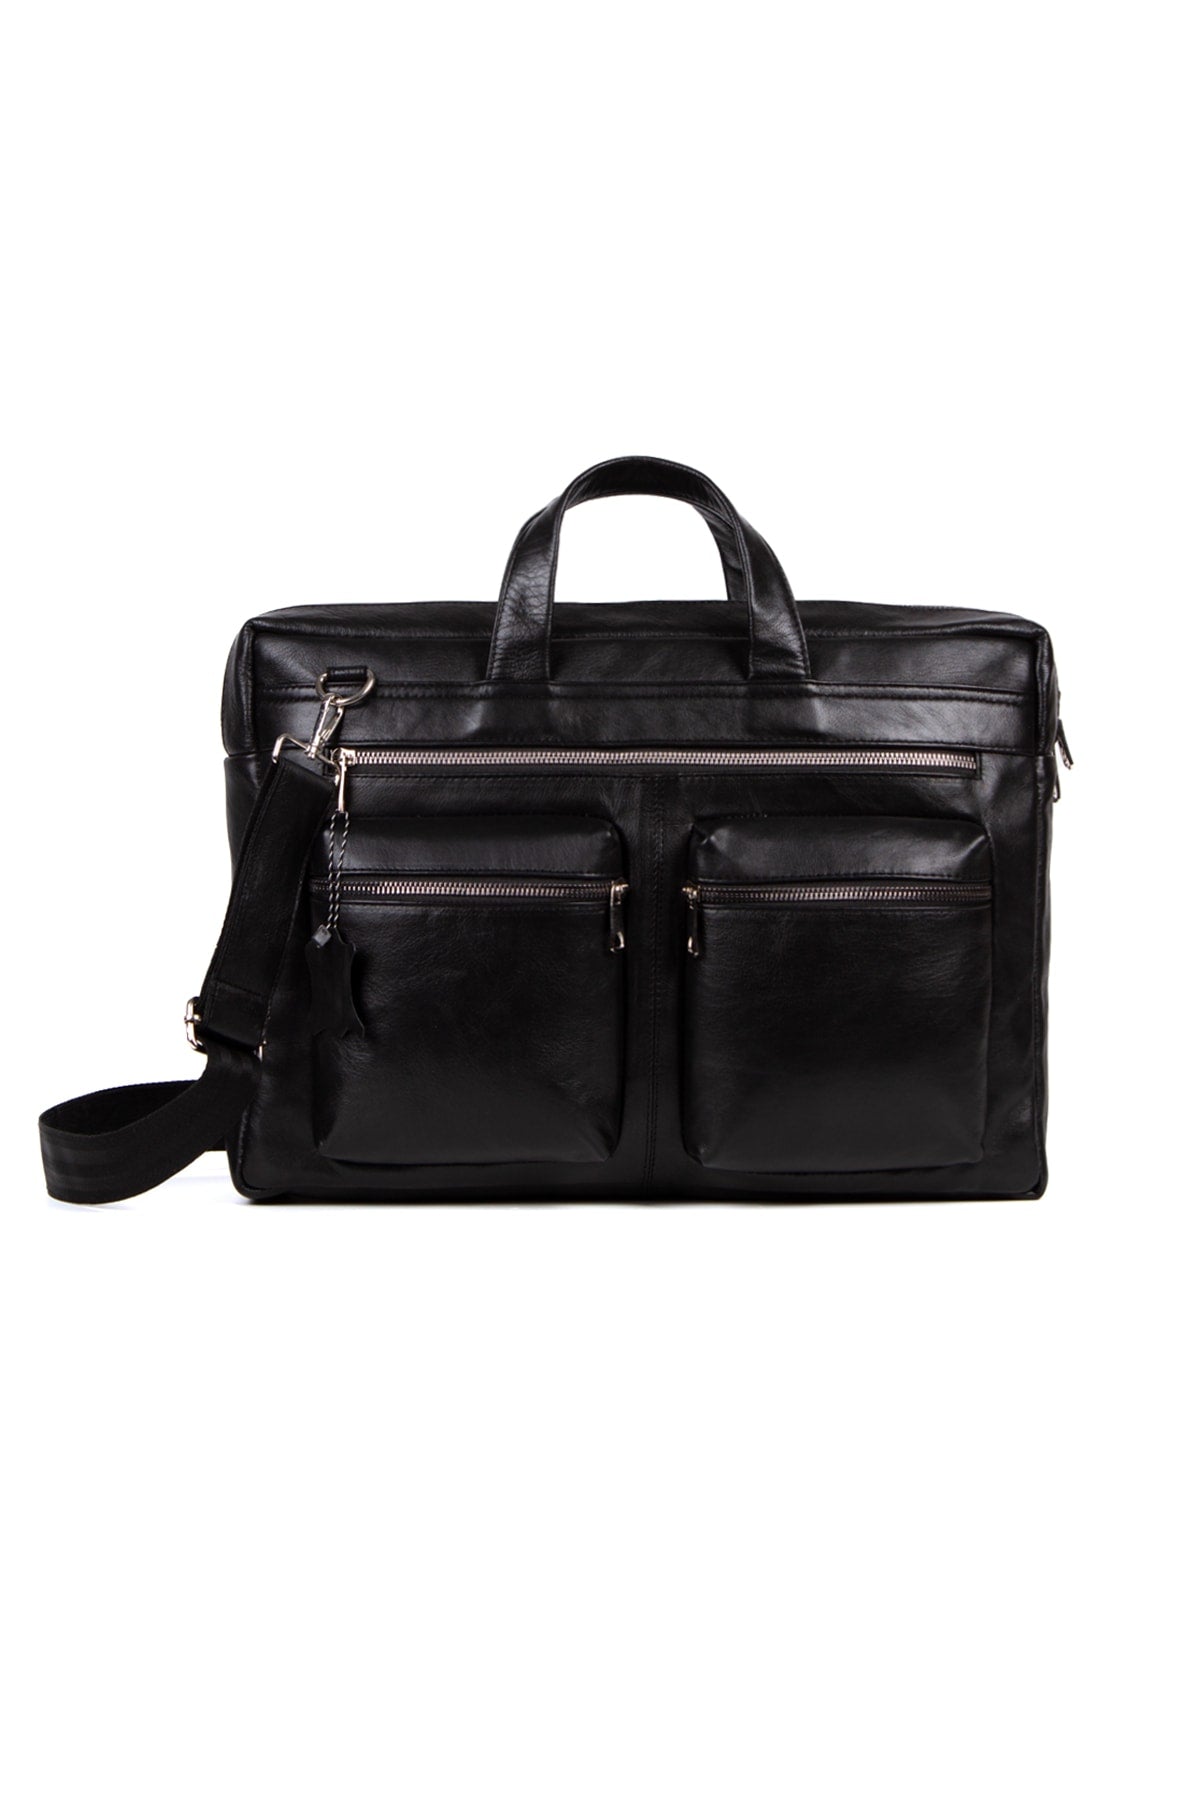 1st Class Genuine Leather Large Size Briefcase Laptop Bag Black (WIDTH: 38CM L:26CM)